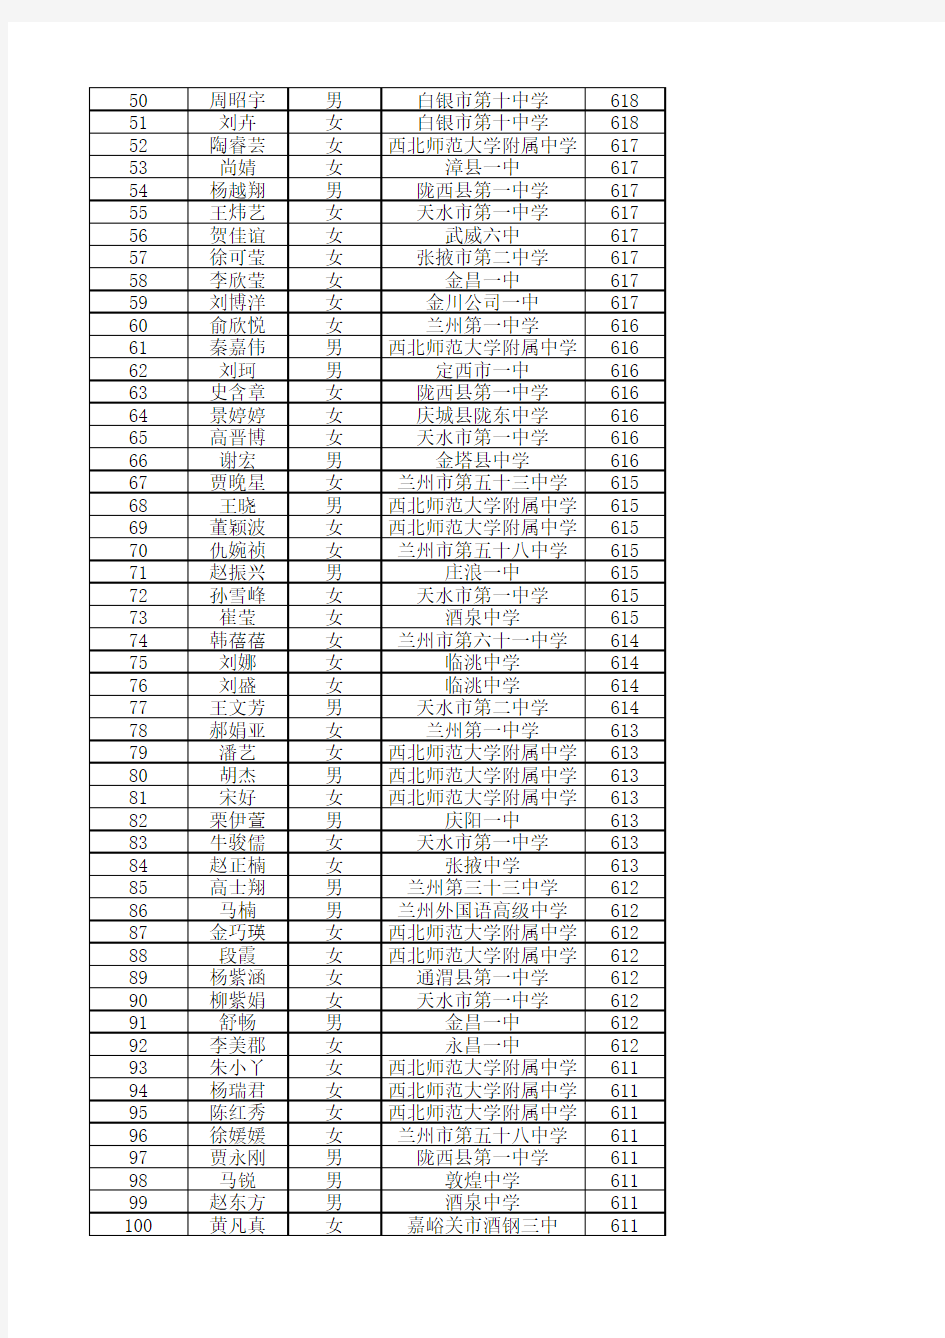 2014年普通高等学校招生全国统一考试甘肃省文科前100名名单